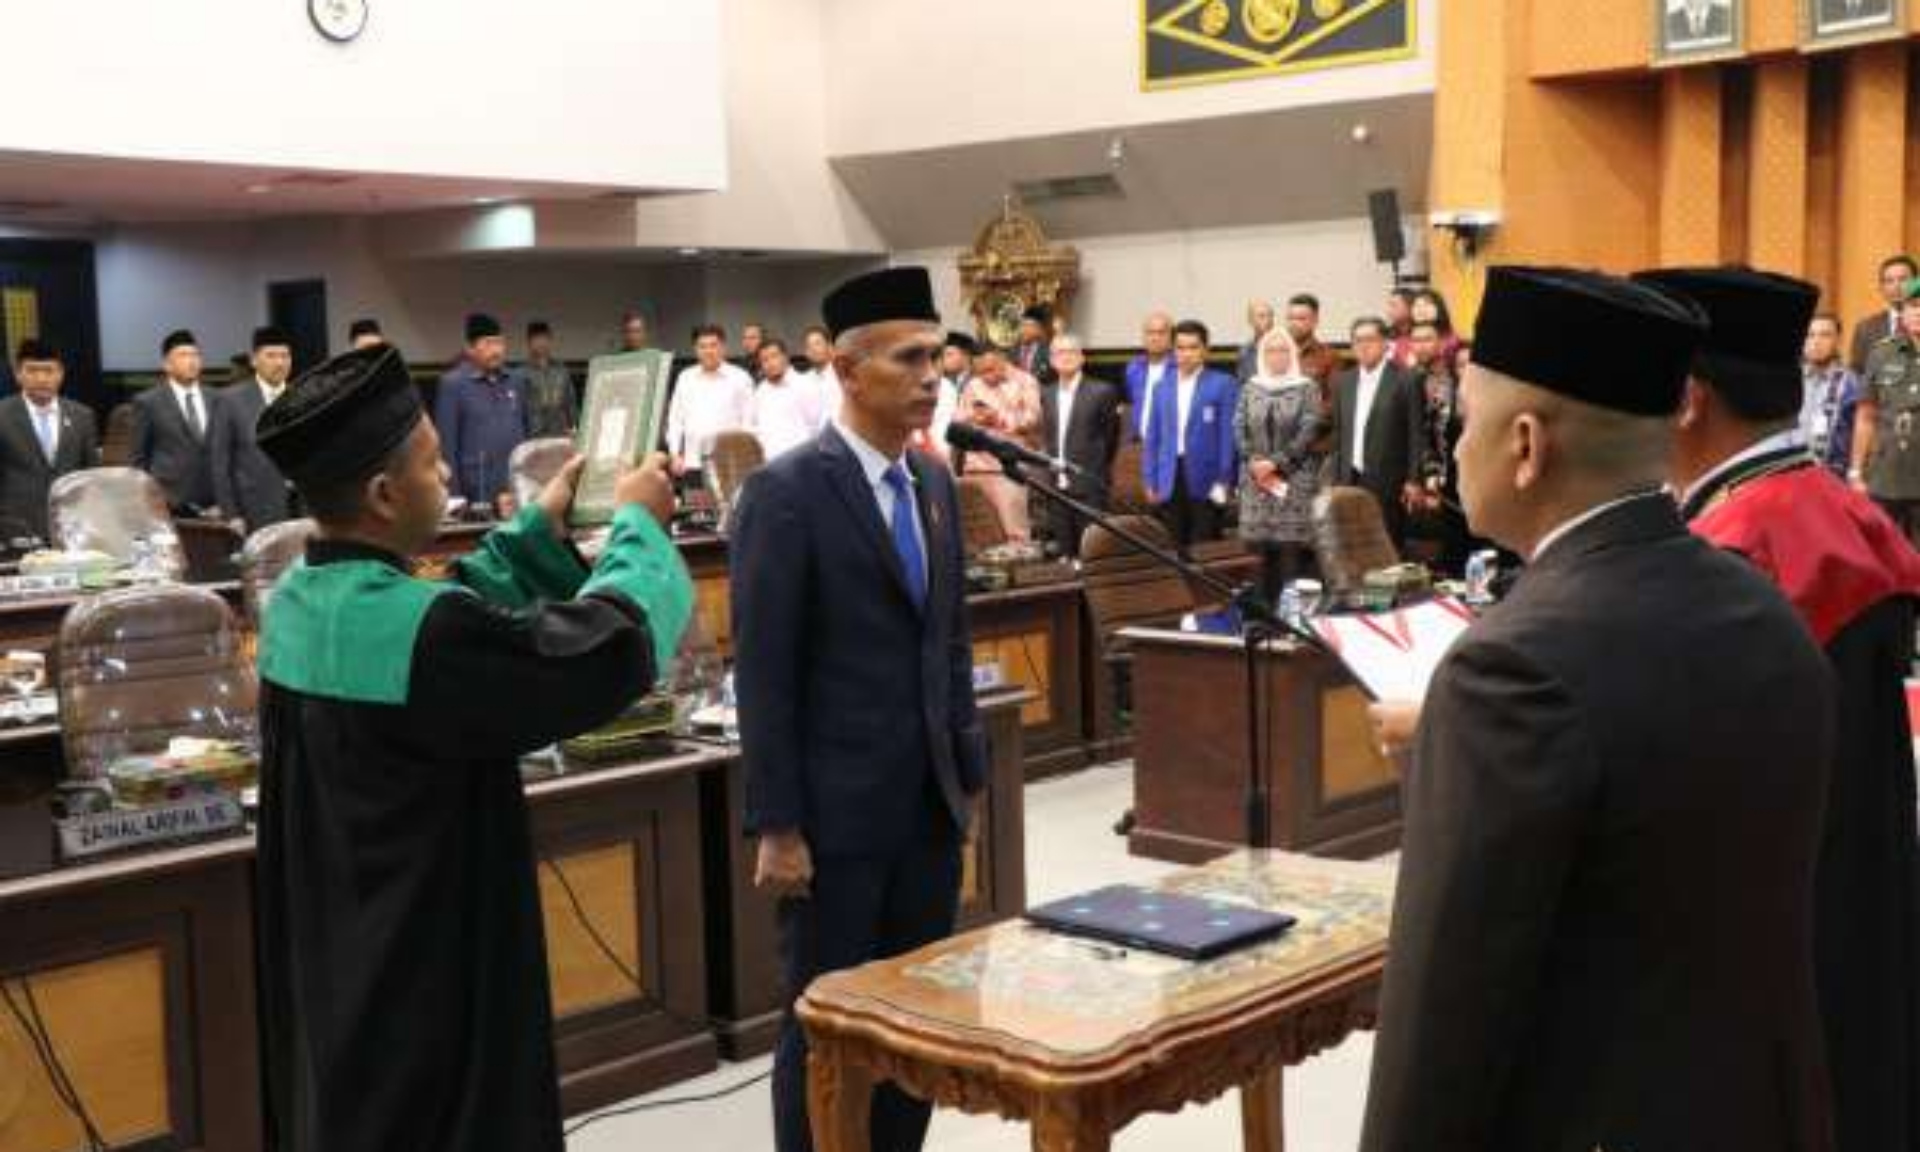 Ir Nofrizal Dilantik dan Diambil Sumpah Jadi Wakil Ketua DPRD Pekanbaru